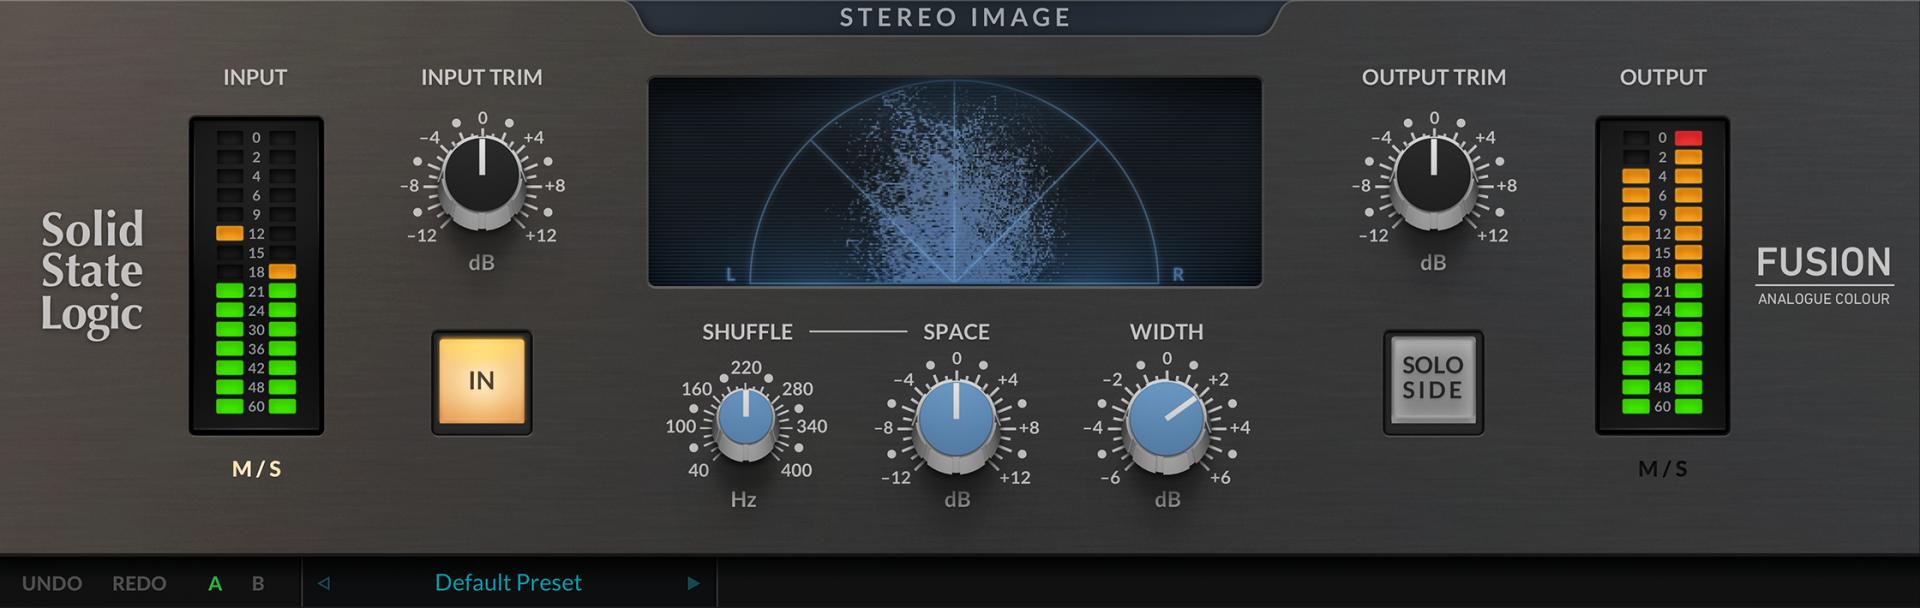 SSL Fusion Stereo Image Plug-in thumb.png.jpg